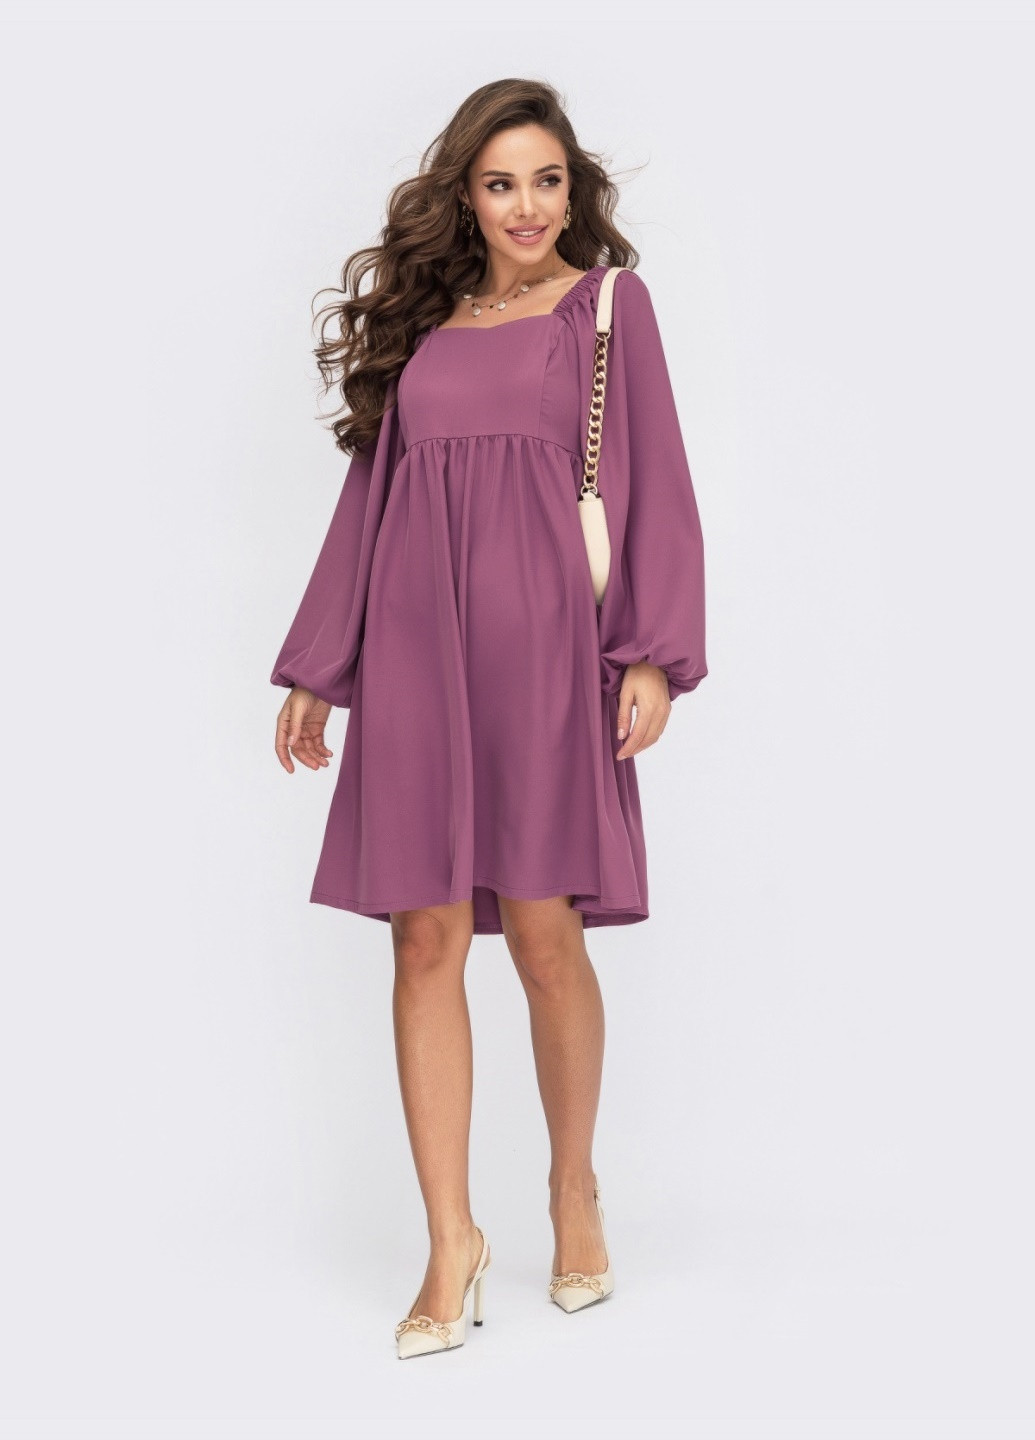 Фуксиновое (цвета Фуксия) платье цвета фуксии с завышеной талией и объемными рукавами Dressa